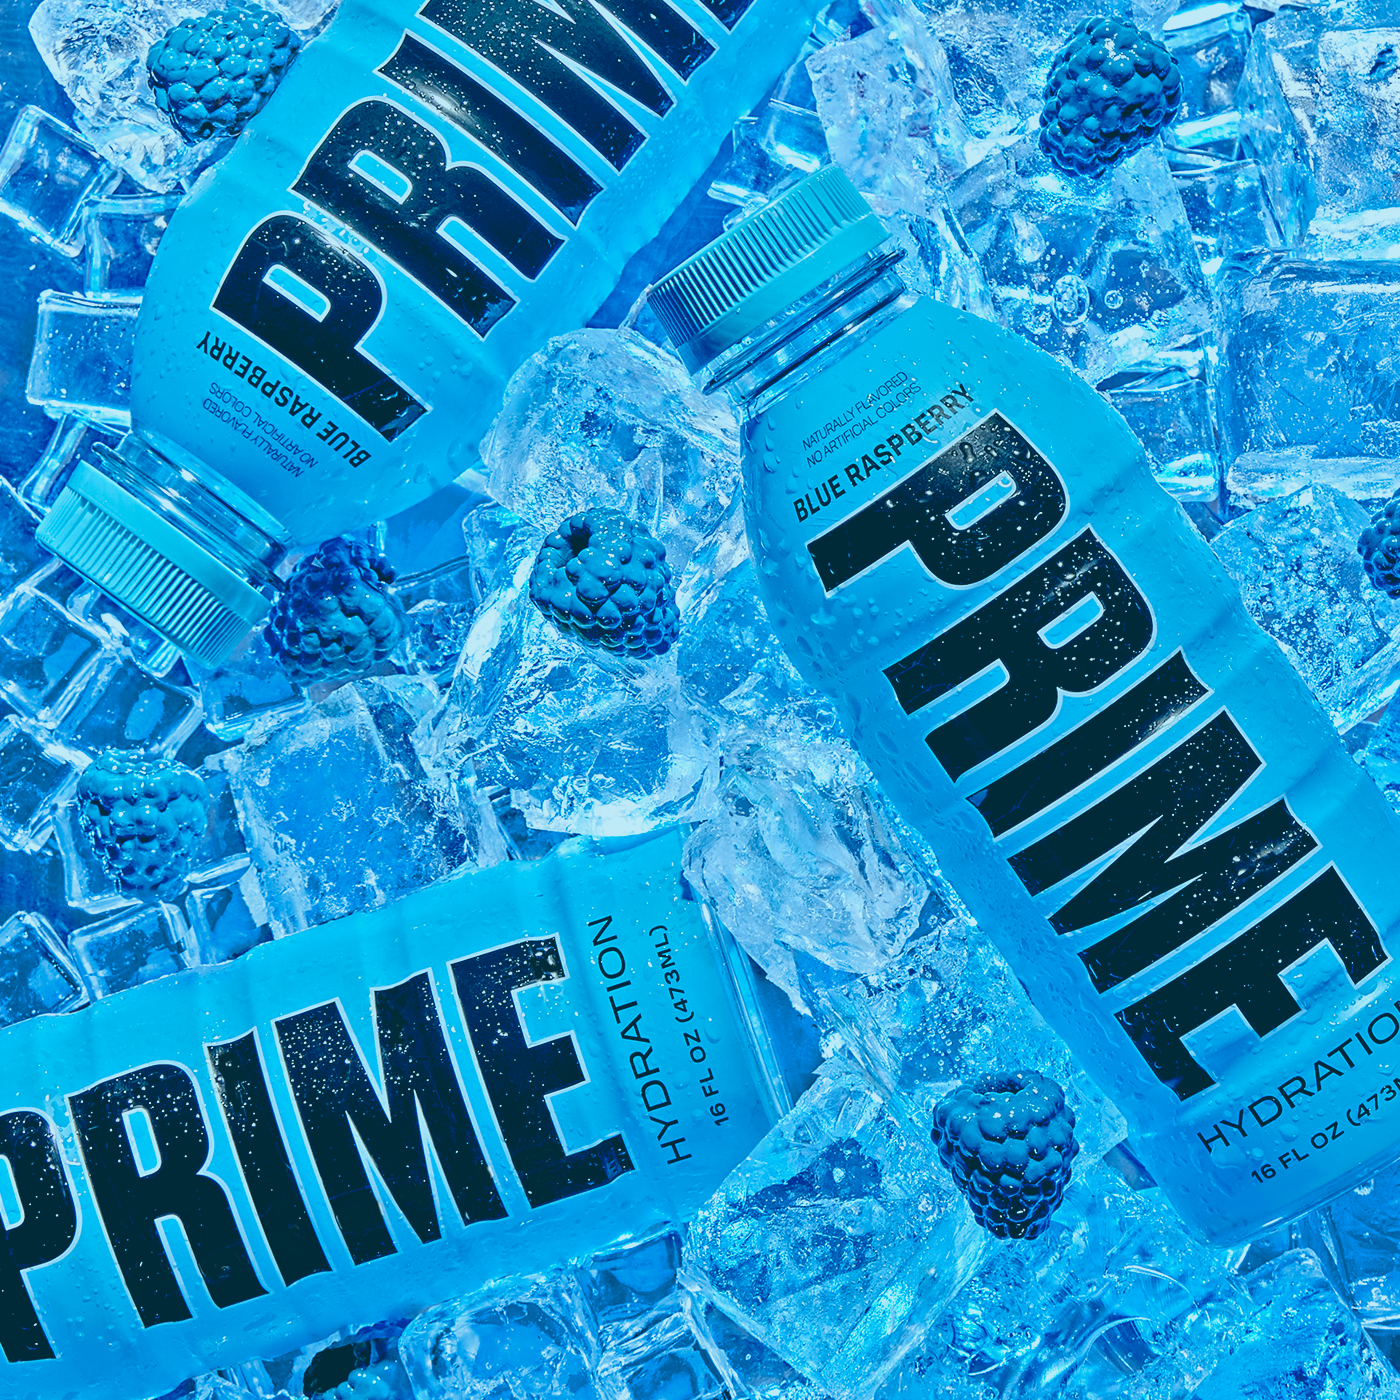 Prime Water Bottle - Blue Raspberry Design (1 Bottle)